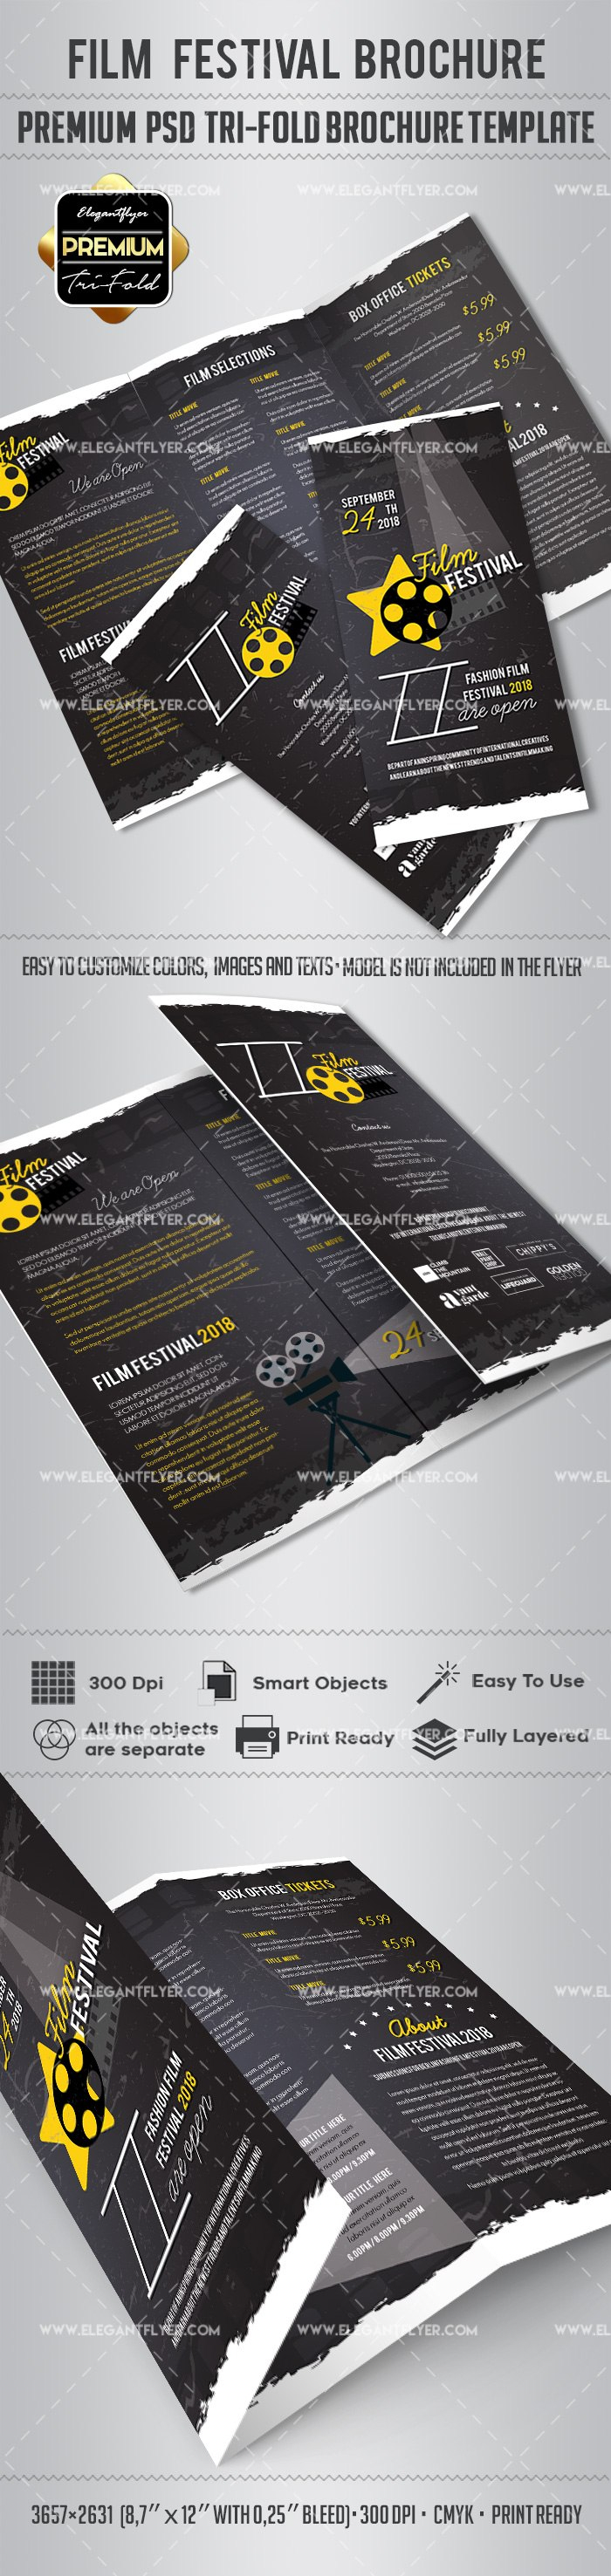 Film Festival Brochure Design –Elegantflyer for Film Festival Brochure Template